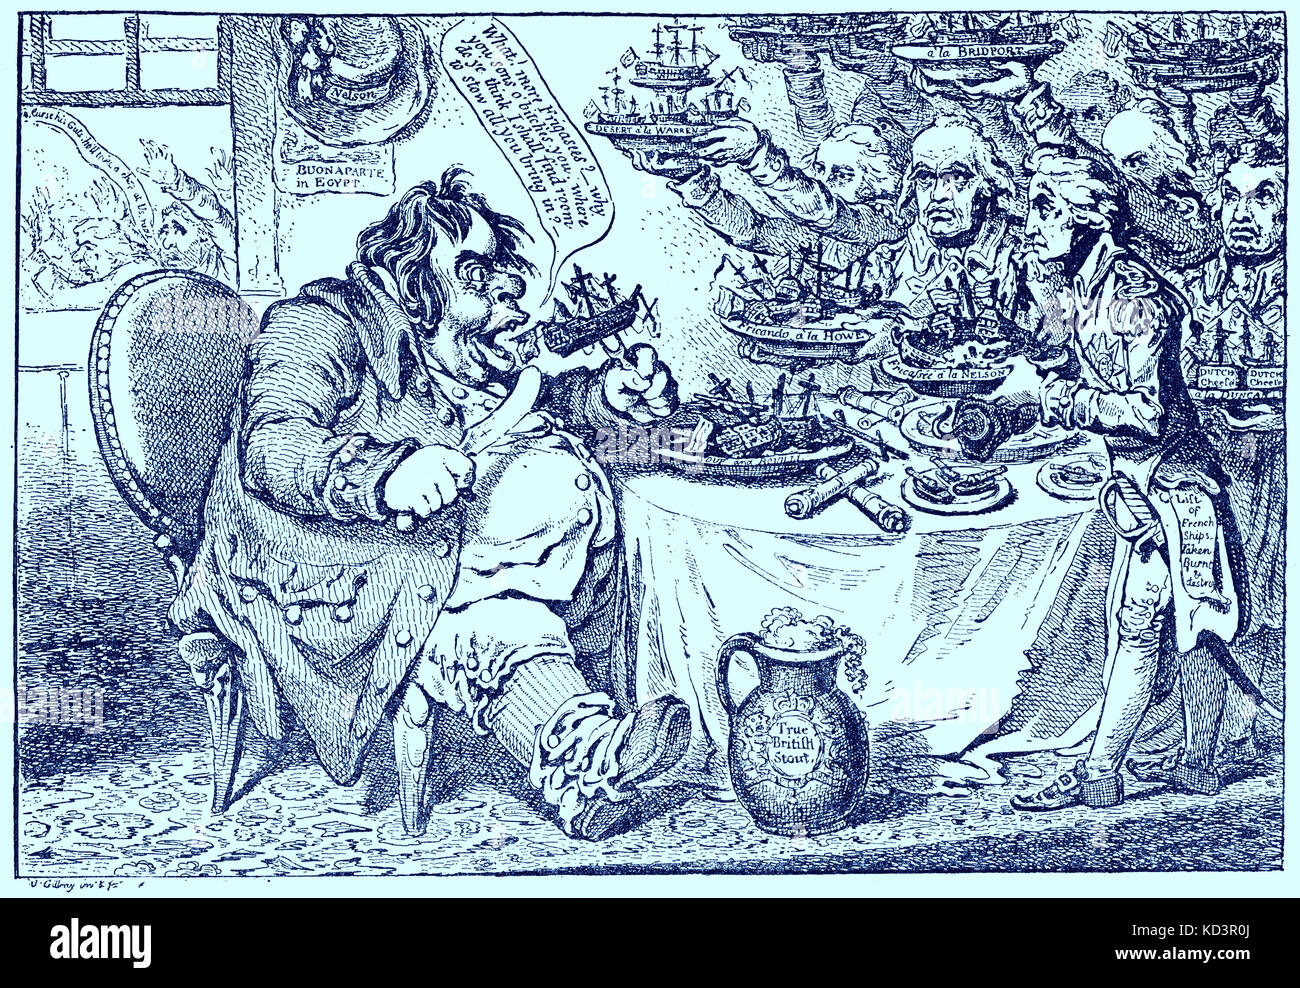 Caricature montrant John Bull en dévorant les navires français capturés a servi à lui par Lord Nelson et ses amiraux victorieux. Illustration par Gillray, 1798 Banque D'Images